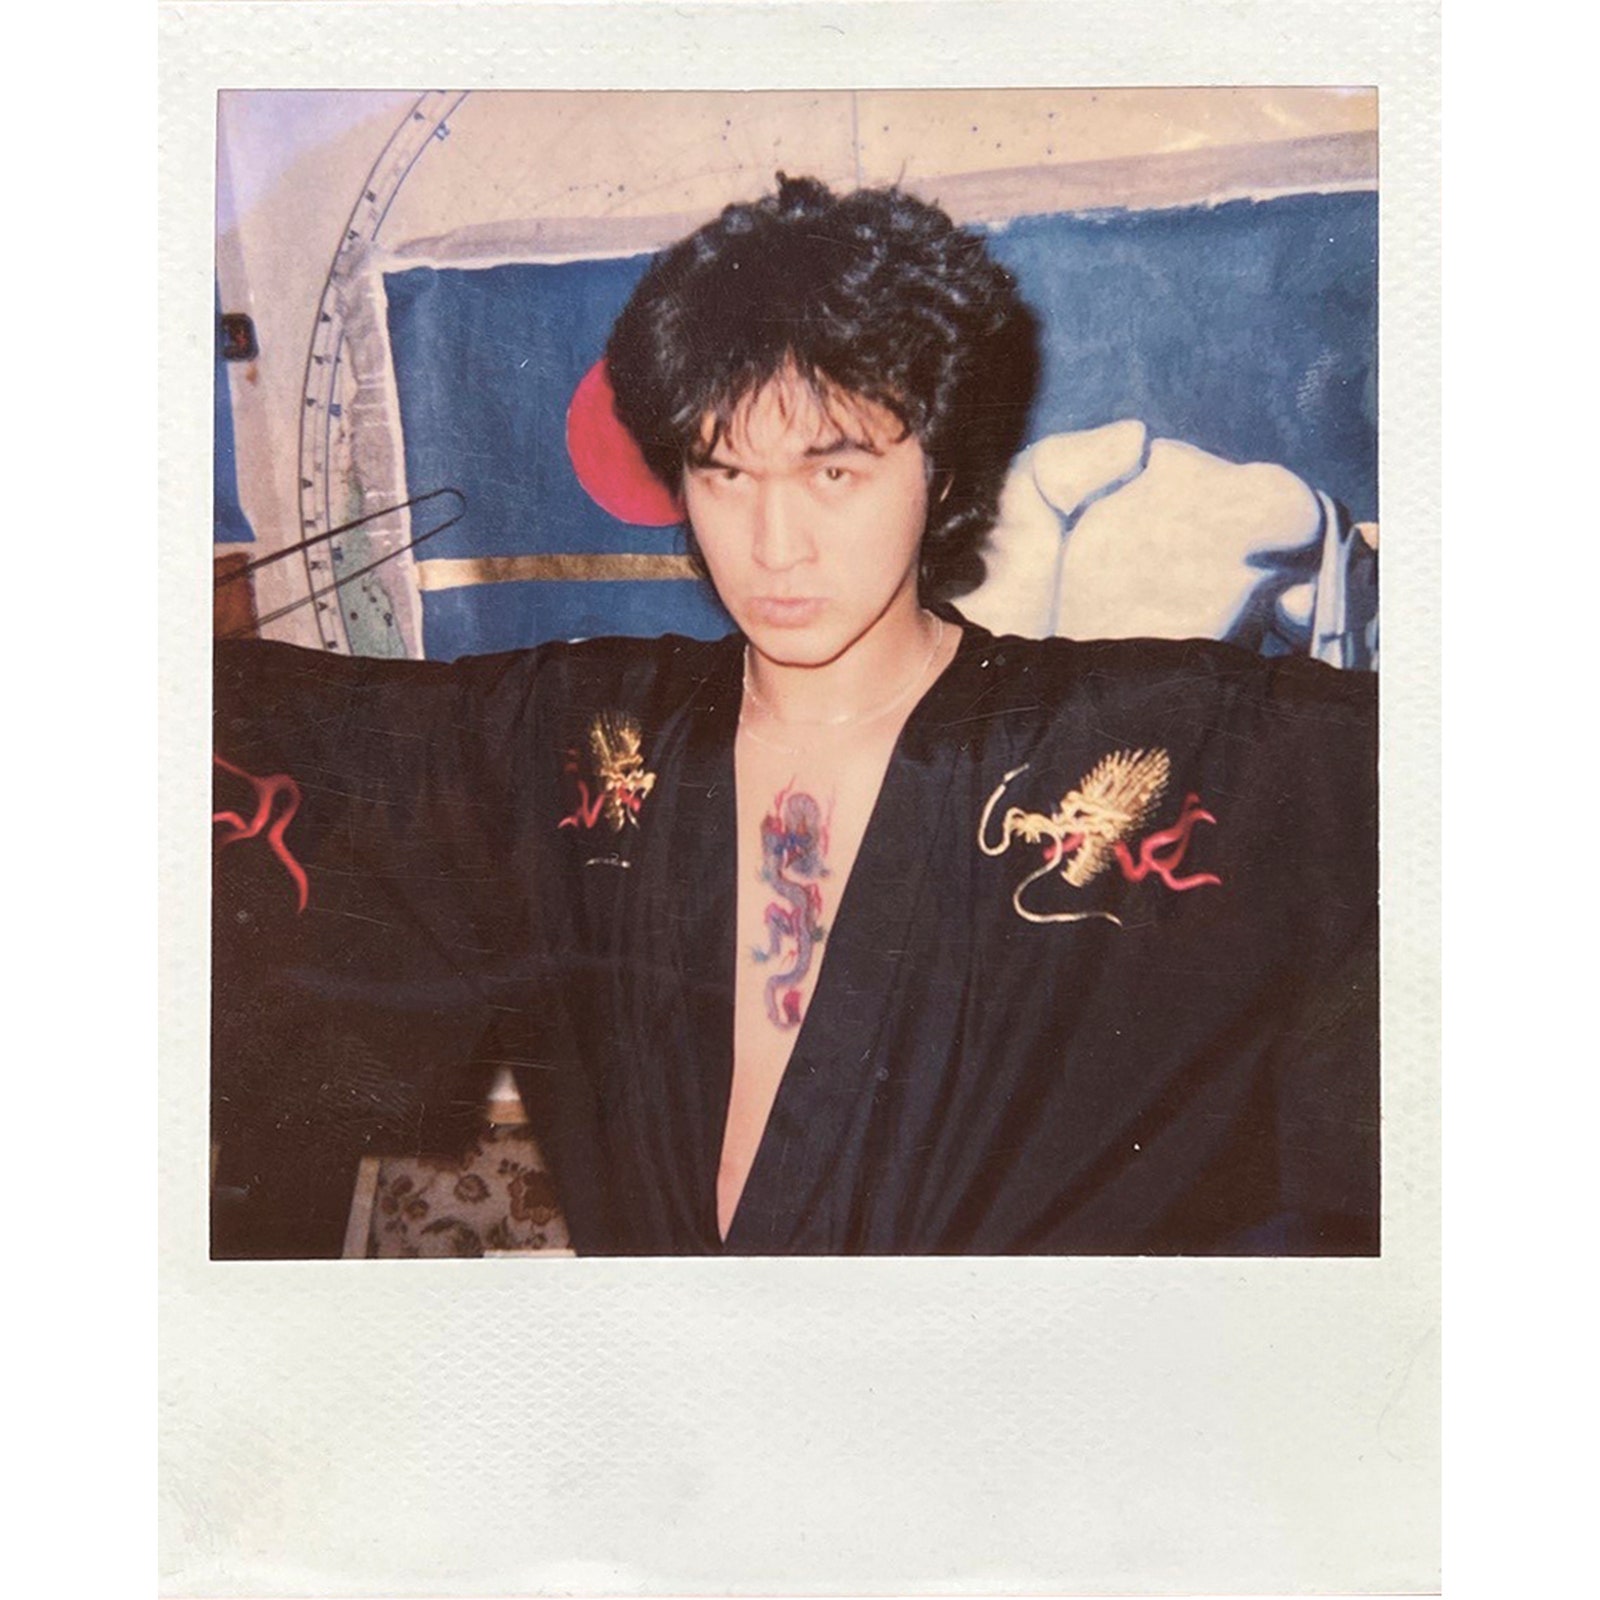 Виктор Цой на фоне картины «Новый мир» 1990. Полароид